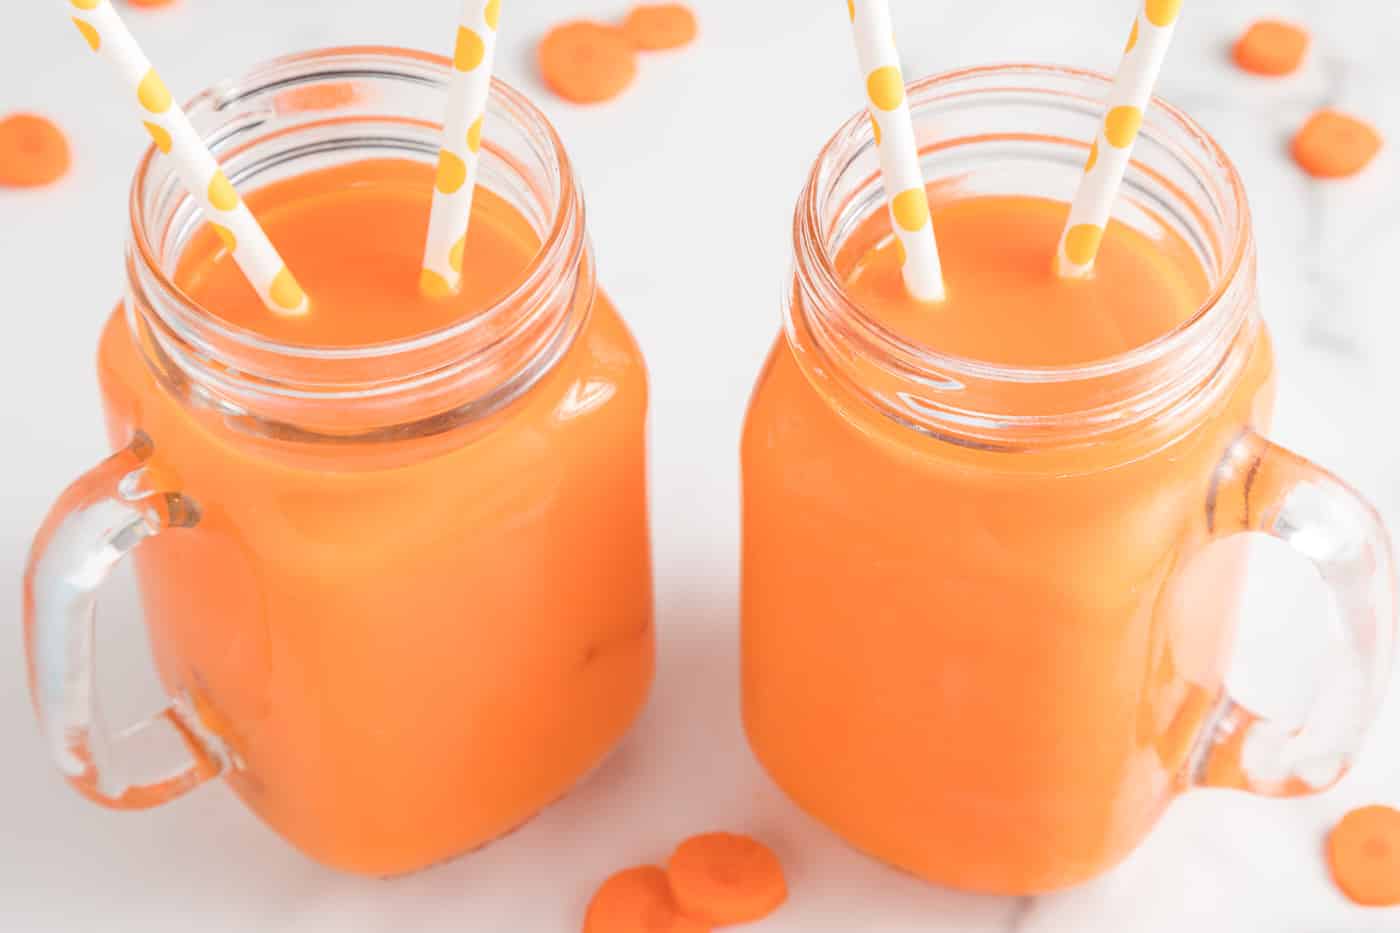 https://www.cleaneatingkitchen.com/wp-content/uploads/2022/05/carrot-orange-juice-hero.jpg